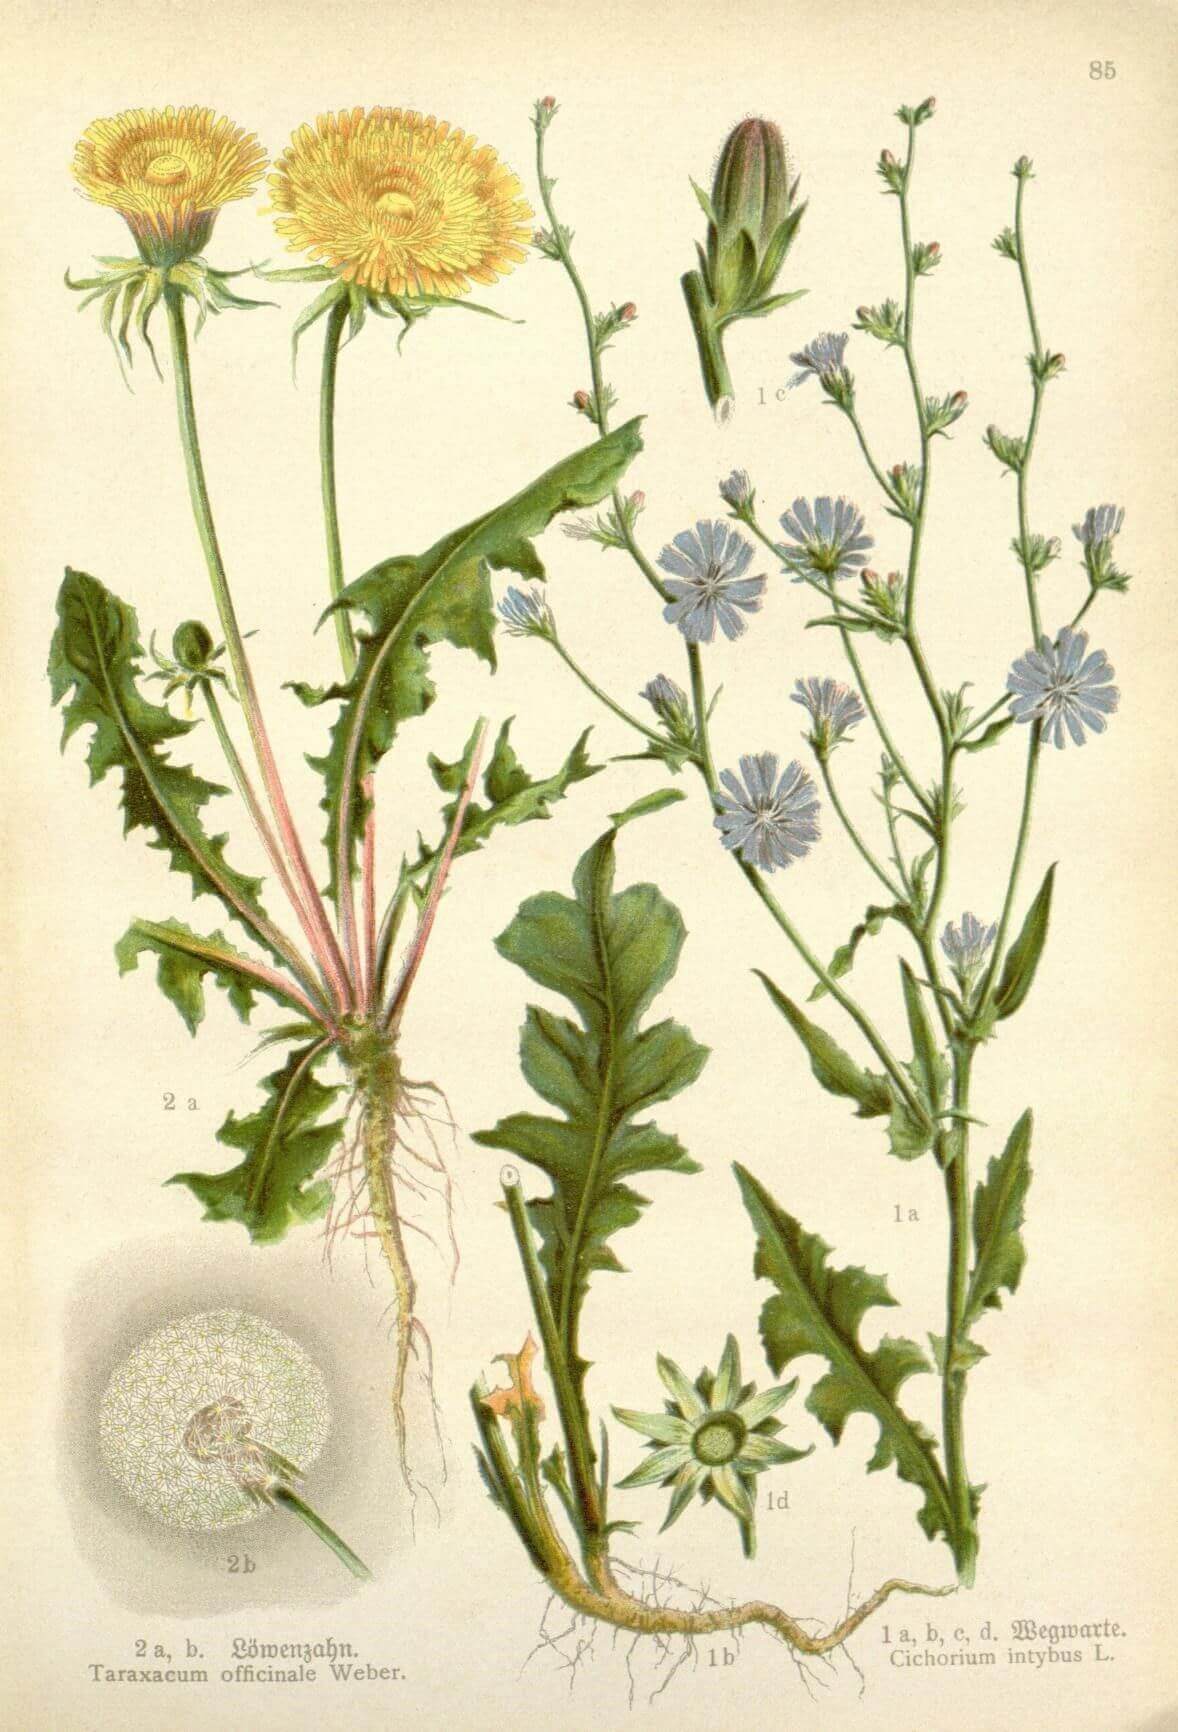 Botanical illustration of a dandelion